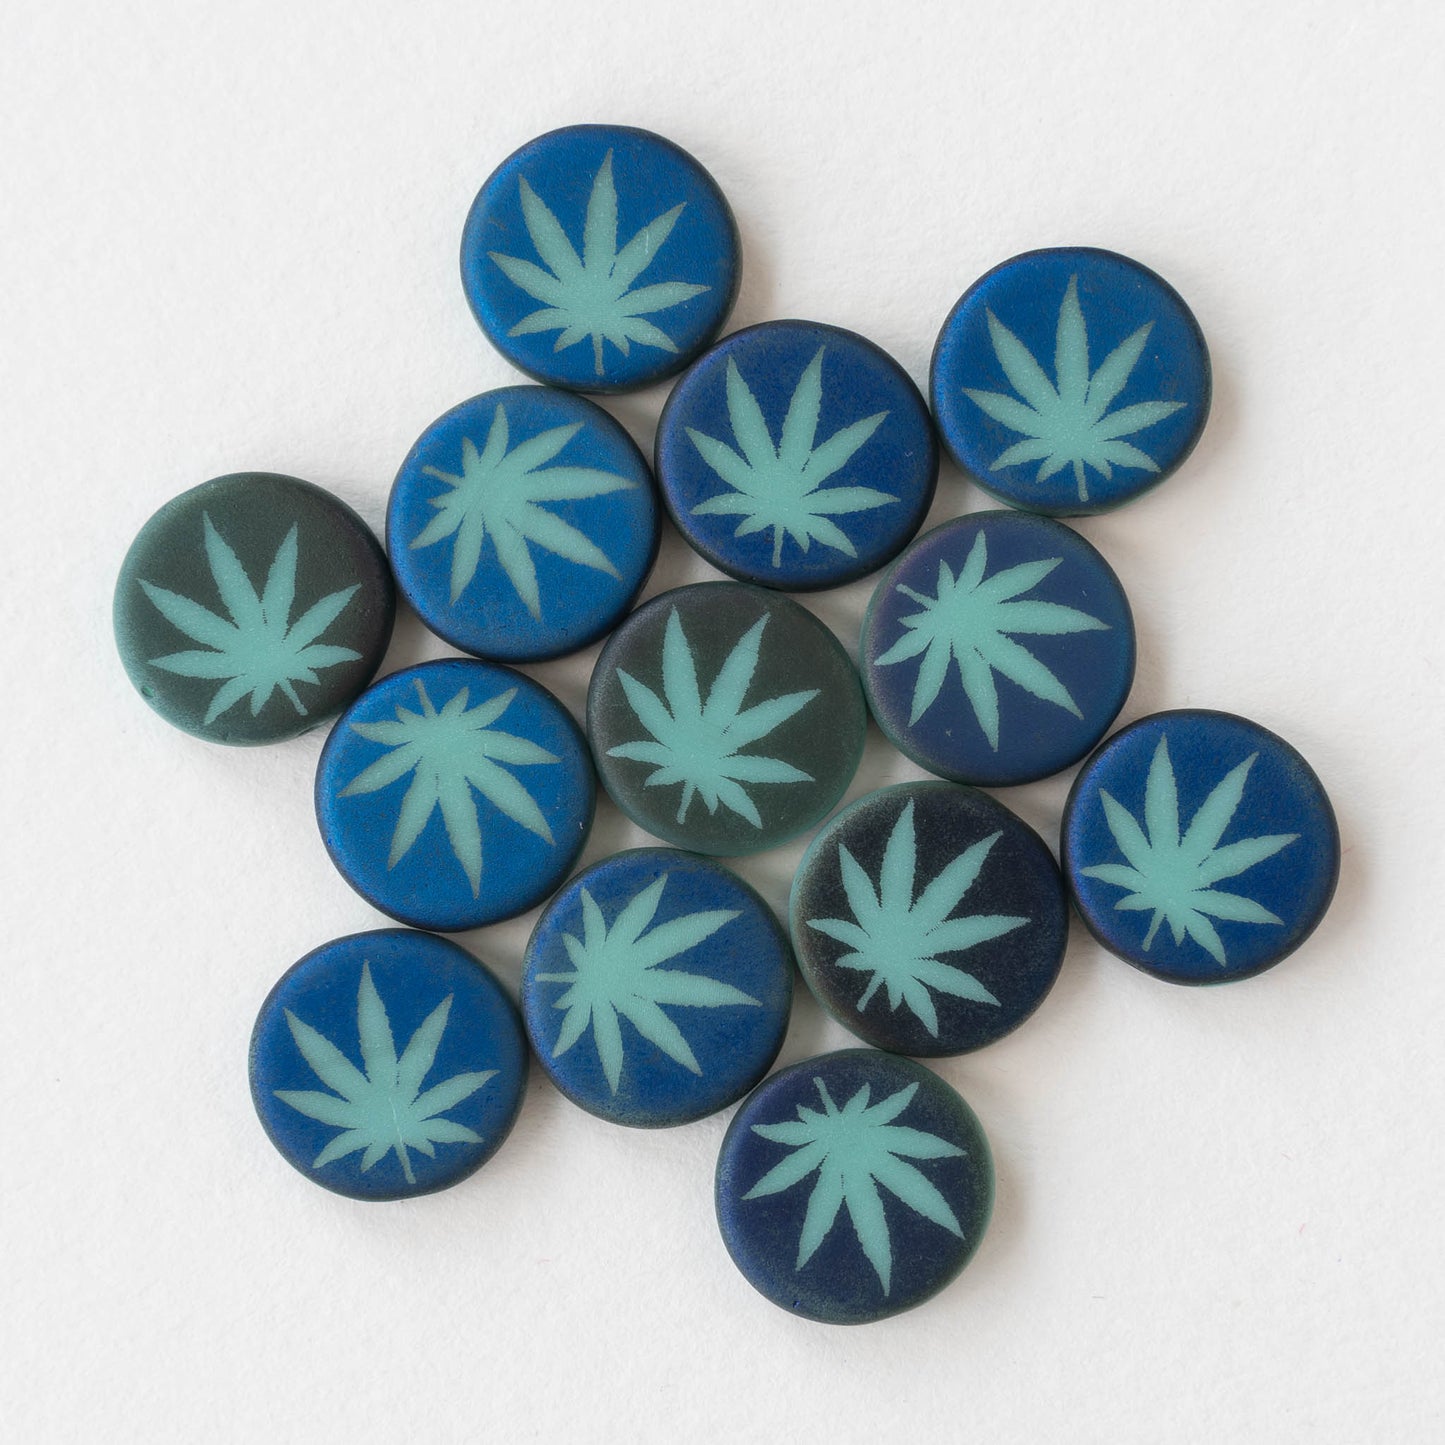 14mm Cannabis Coin Leaf Beads - Seafoam/Blue - 8 beads